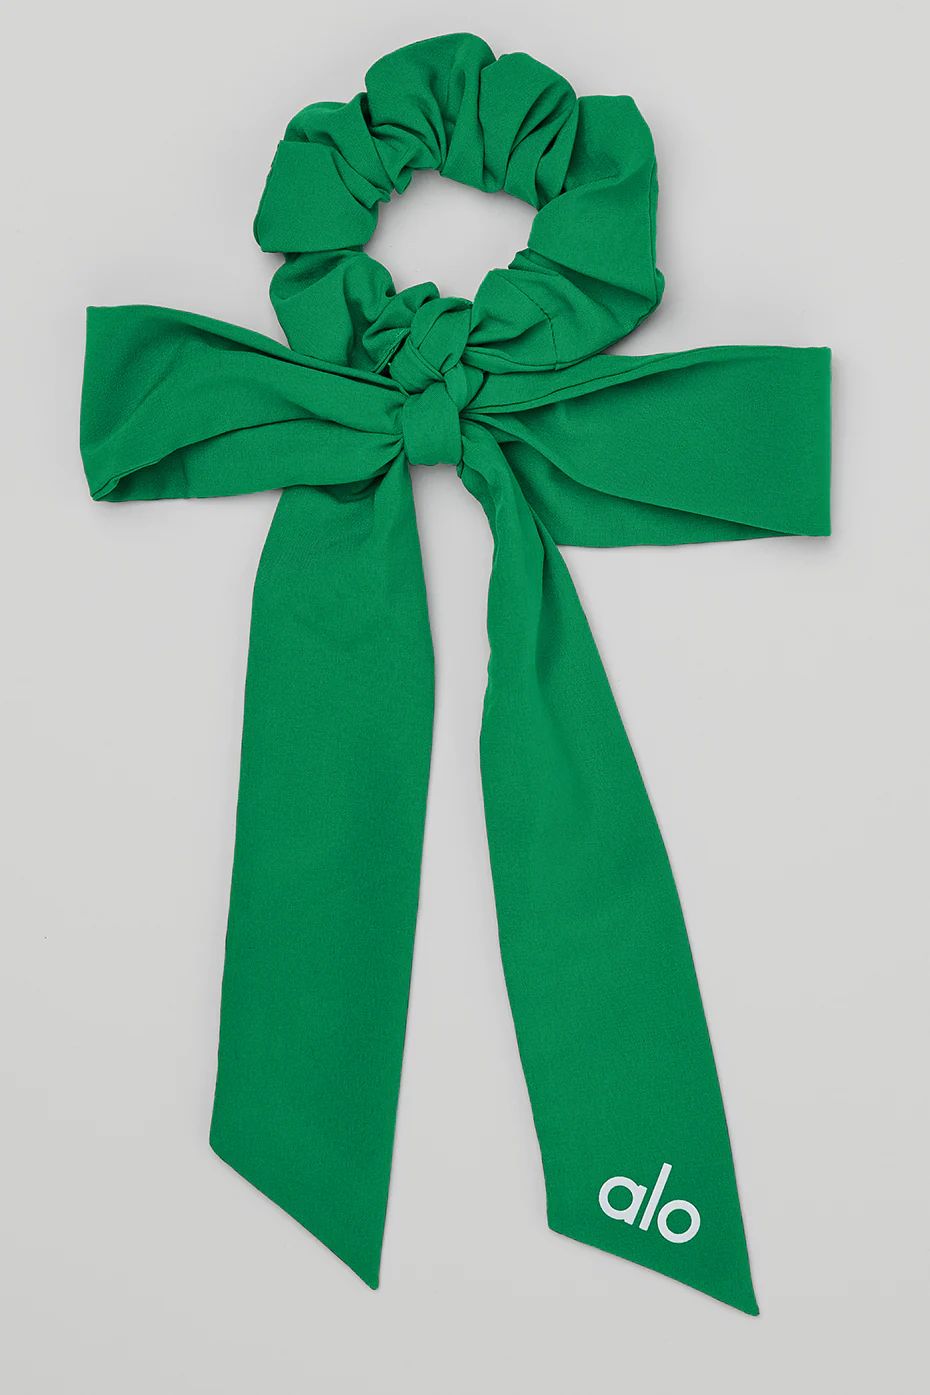 Alo YogaÂ® | Love Knots Tie Scrunchie in Green Emerald | Alo Yoga